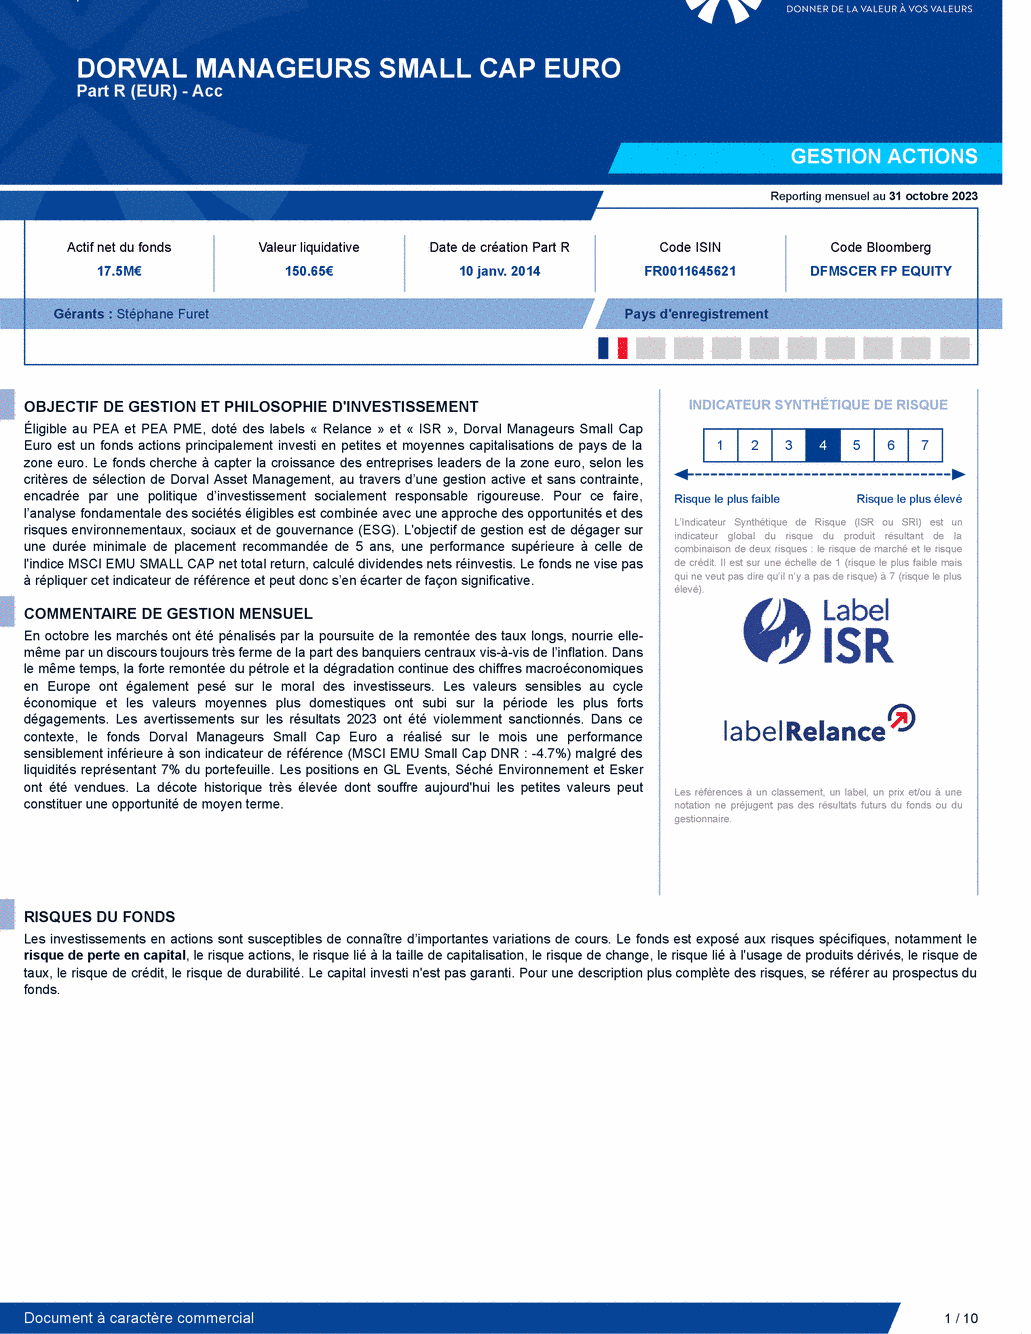 Reporting DORVAL MANAGEURS SMALL CAP EURO Part C - 31/10/2023 - Français